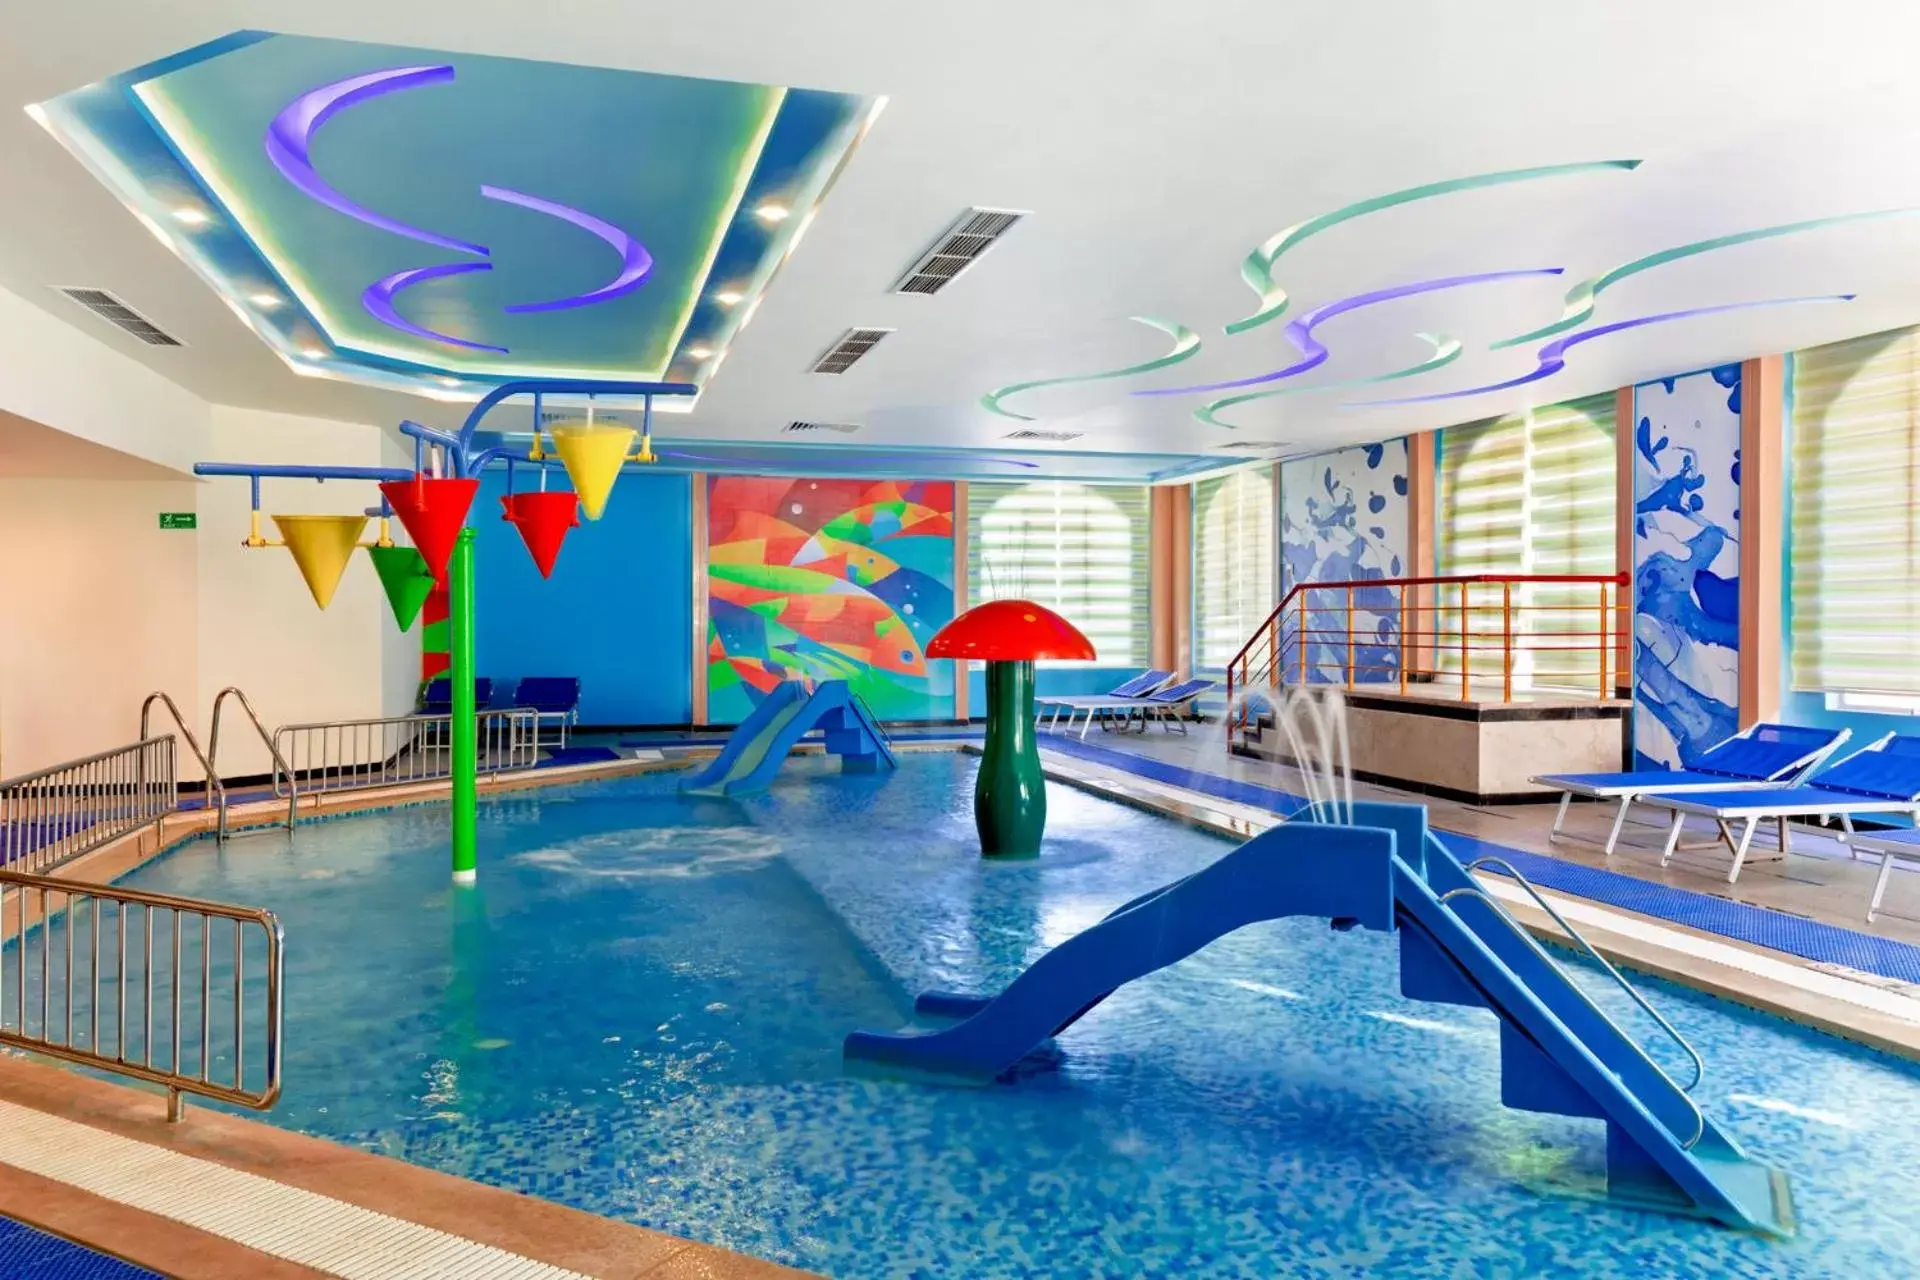 Kids's club, Swimming Pool in Pickalbatros Dana Beach Resort - Hurghada